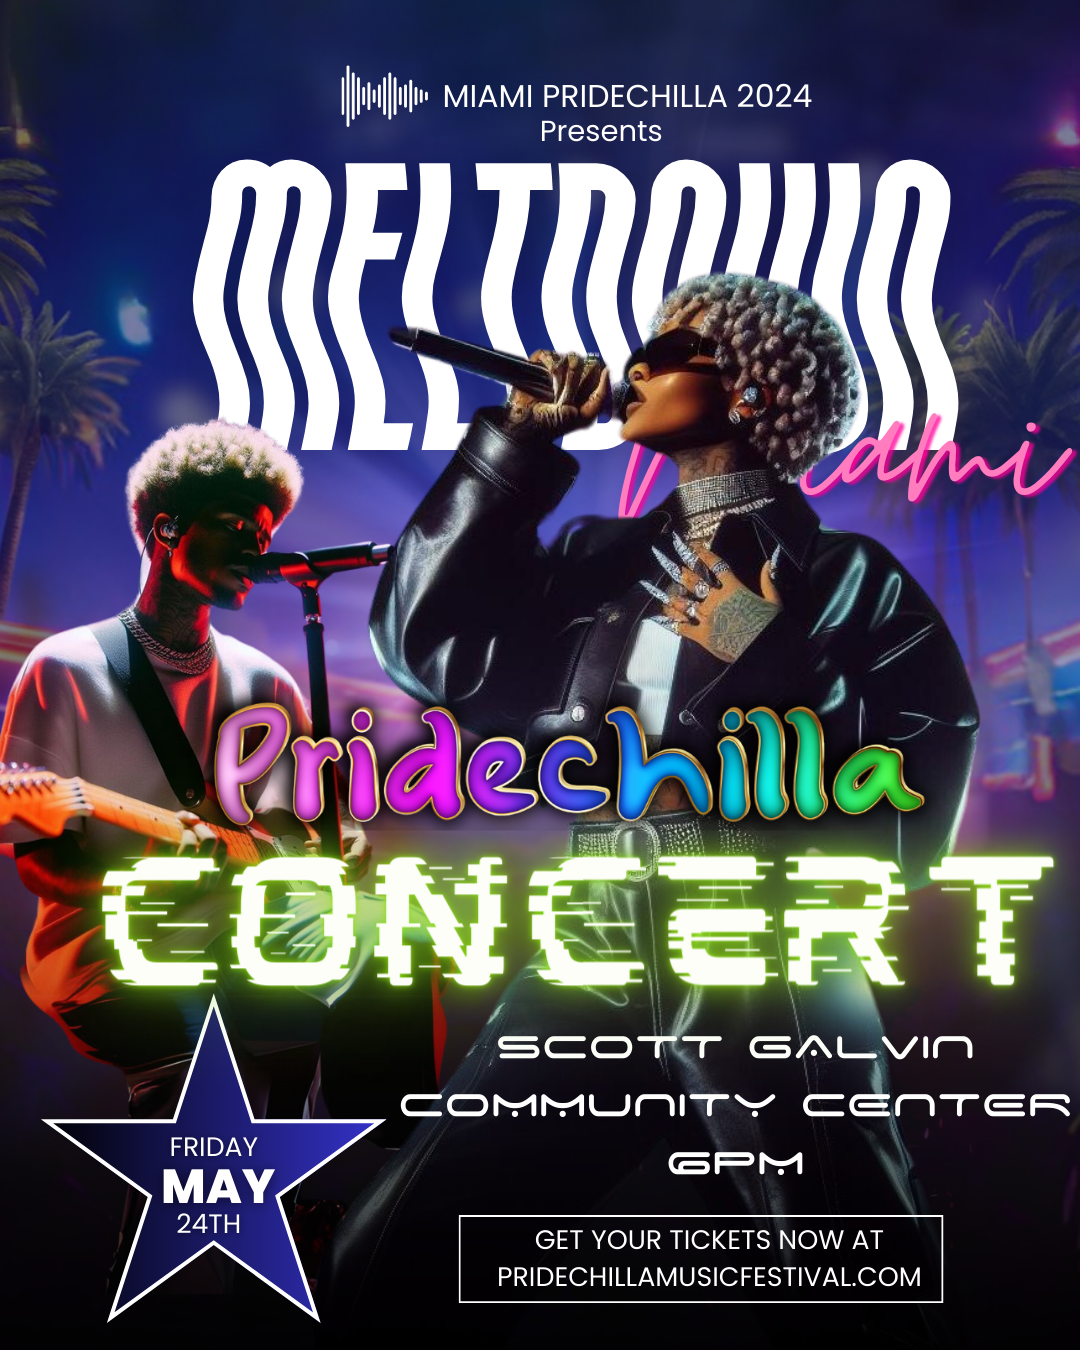 Meltdown Miami Pridechilla Concert  on may. 24, 18:00@Scott Galvin Community Center - Compra entradas y obtén información enAfro Pride Federation pridechillamusicfestival